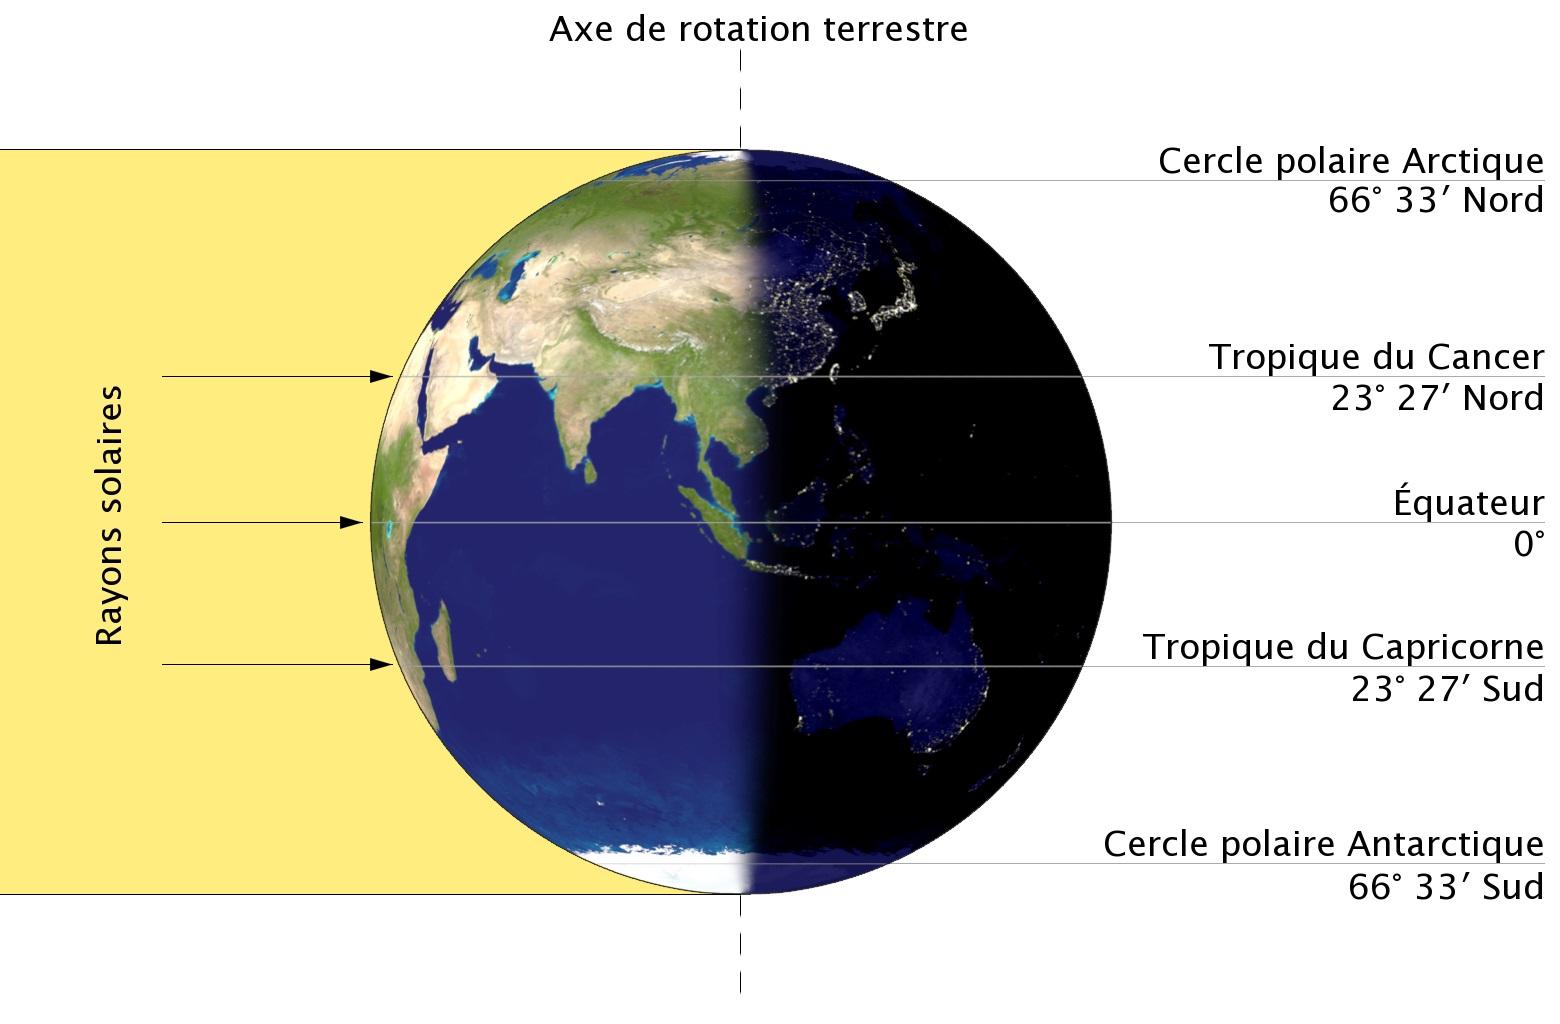 La Terre à l'équinoxe, avec l'Eurasie à midi. [Wikimédia/CC BY-SA 1.0]